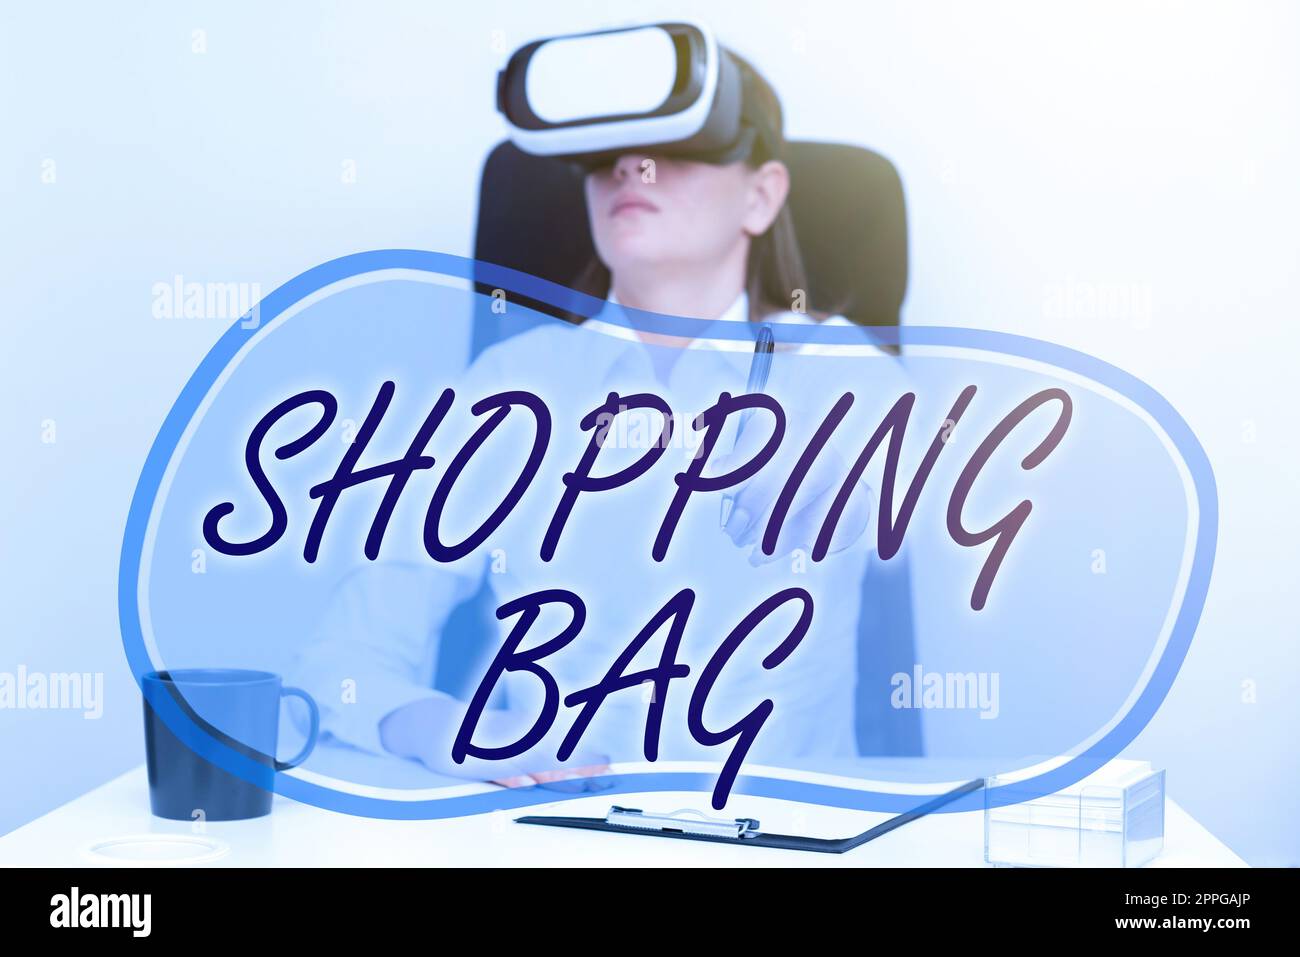 Konzeptionelle Bildunterschrift Shopping Bag. Schaufenstercontainer für den Transport von persönlichen Besitztümern oder Einkäufen Stockfoto